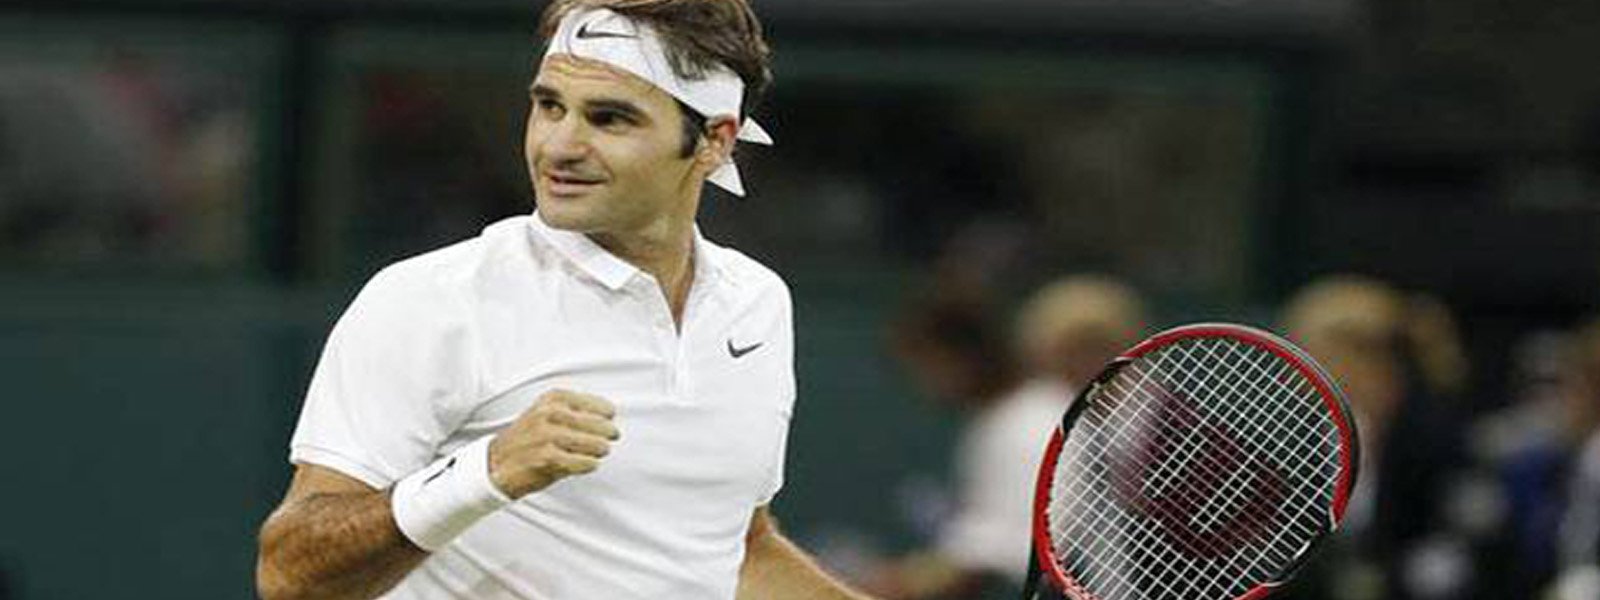 Tennis: Federer into Rotterdam Open Final 